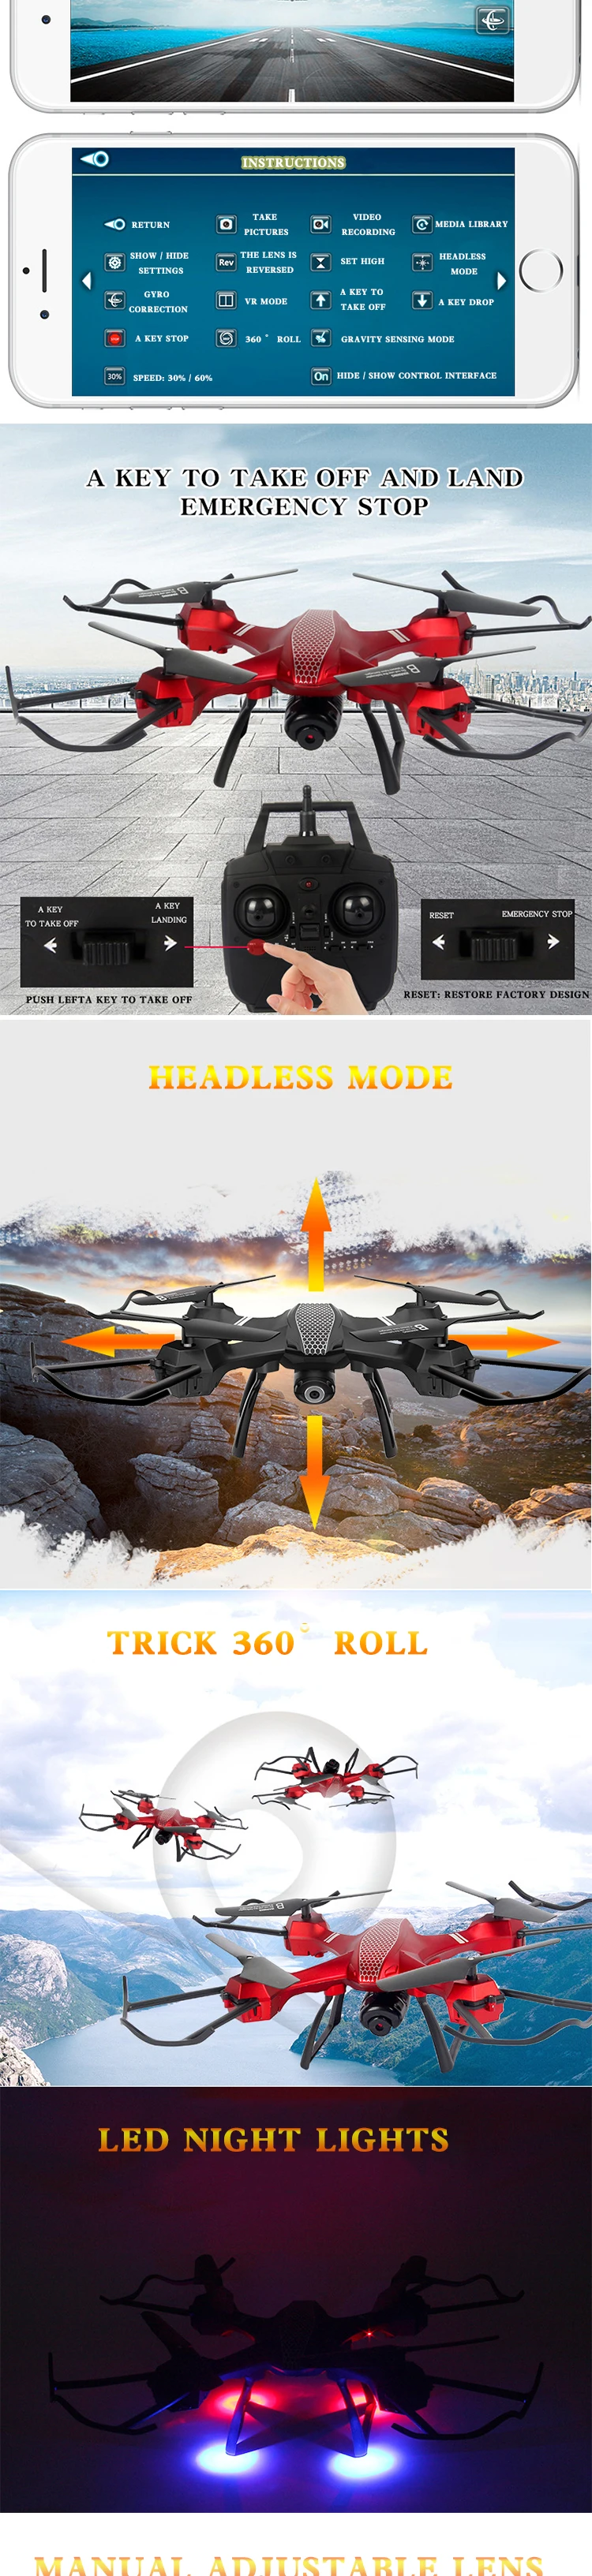 Drone Quadcopter 6 оси Grro карман 360 градусов подвижного Headless режим парение Функция зарядка через usb Мини Вертолеты с камер БЛА квадрокоптер с камерой квадракоптер вертолет игрушки дрон квадракоптер дрон